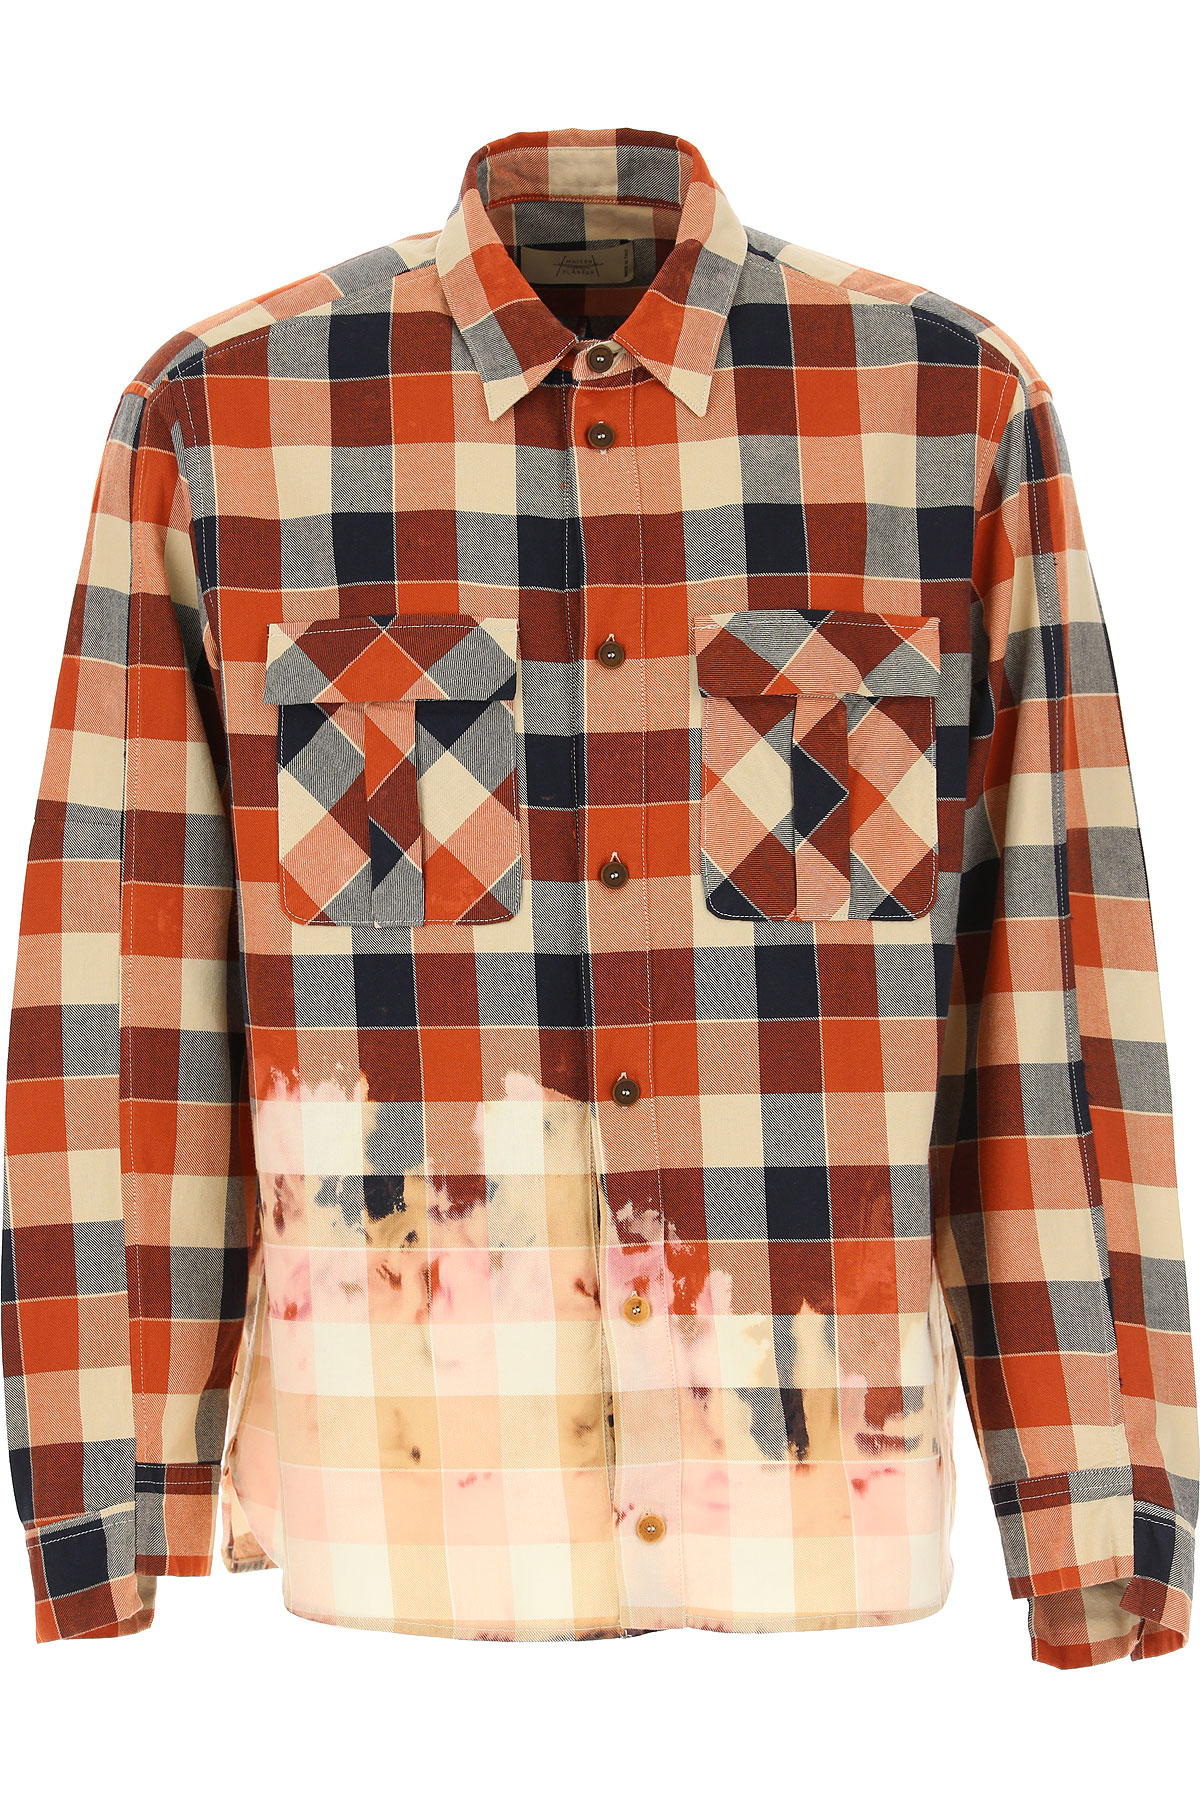 Maison Flaneur Hemde für Herren, Oberhemd Günstig im Sale, Herbstfarben, Baumwolle, 2017, L M S XL